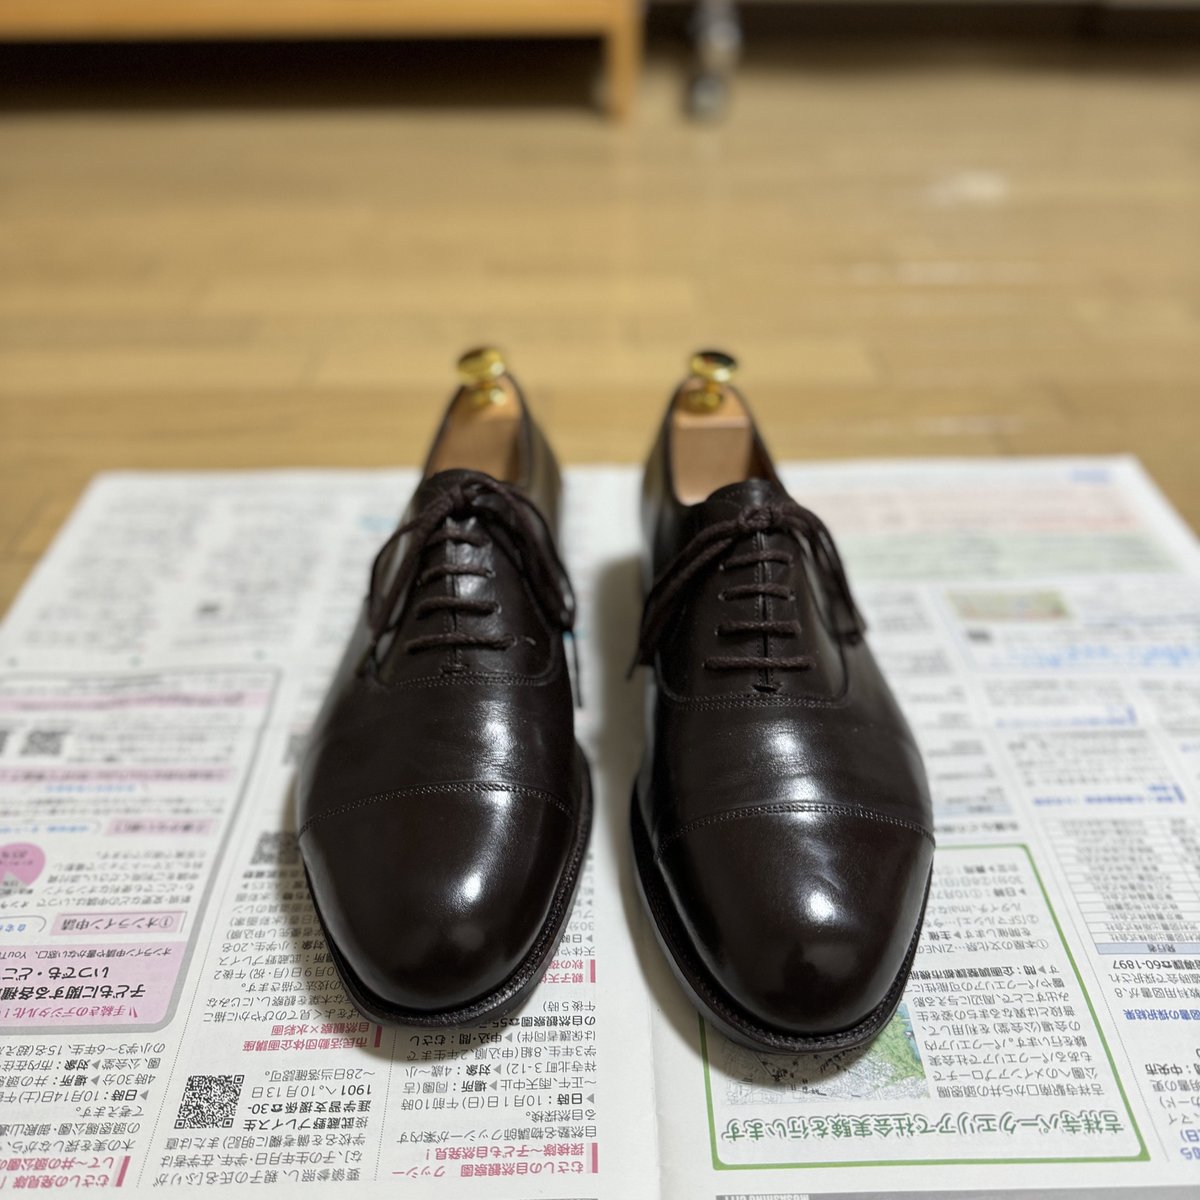 久しぶりに靴磨き。

平野靴店のストレートチップを磨きました。

#靴磨き #shoecare #平野靴店 #hiranokutsuten